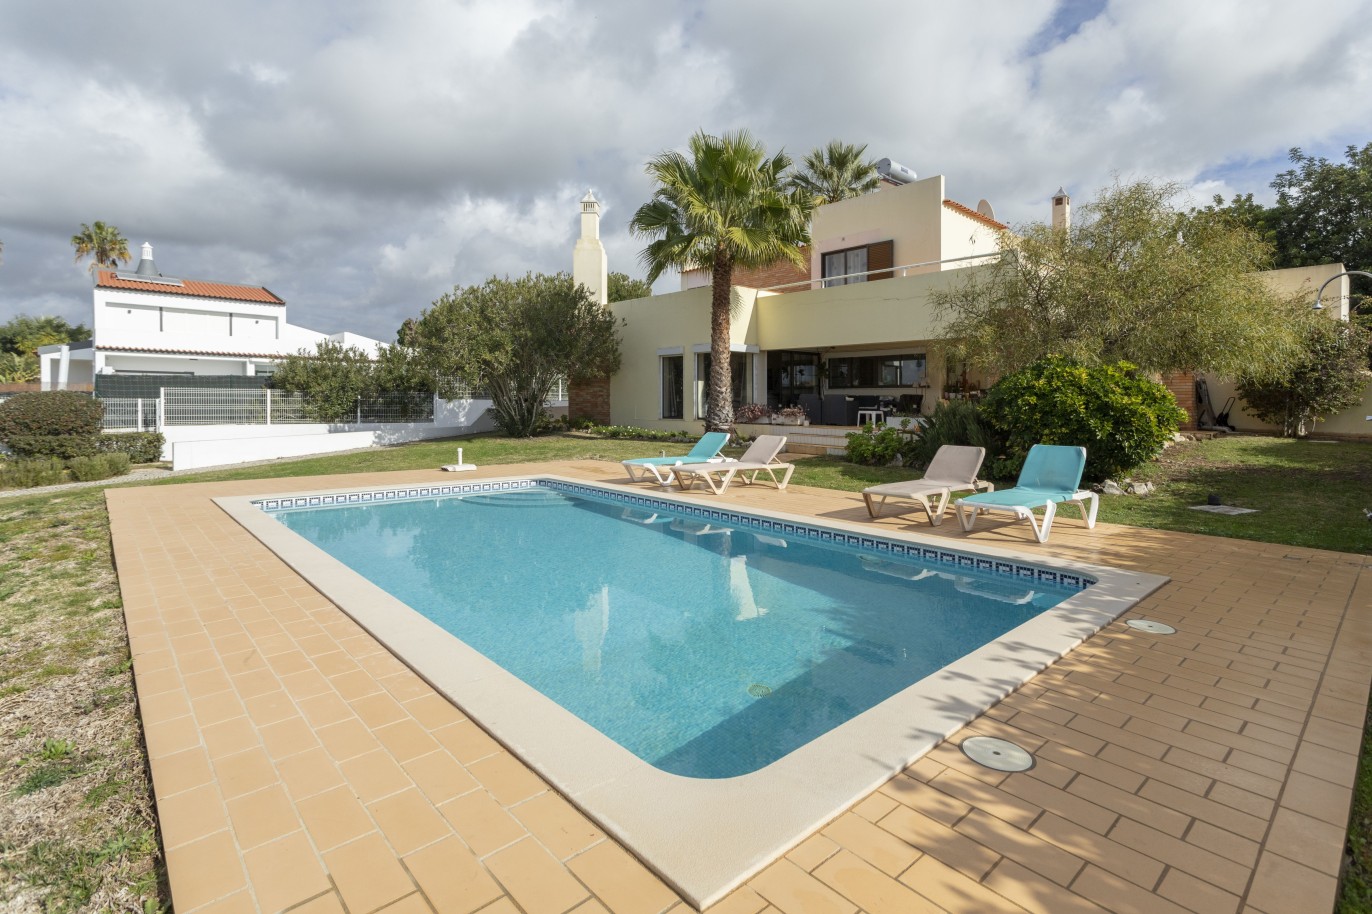 Moradia independente T3 com piscina, para venda em Vilamoura, Algarve_248843